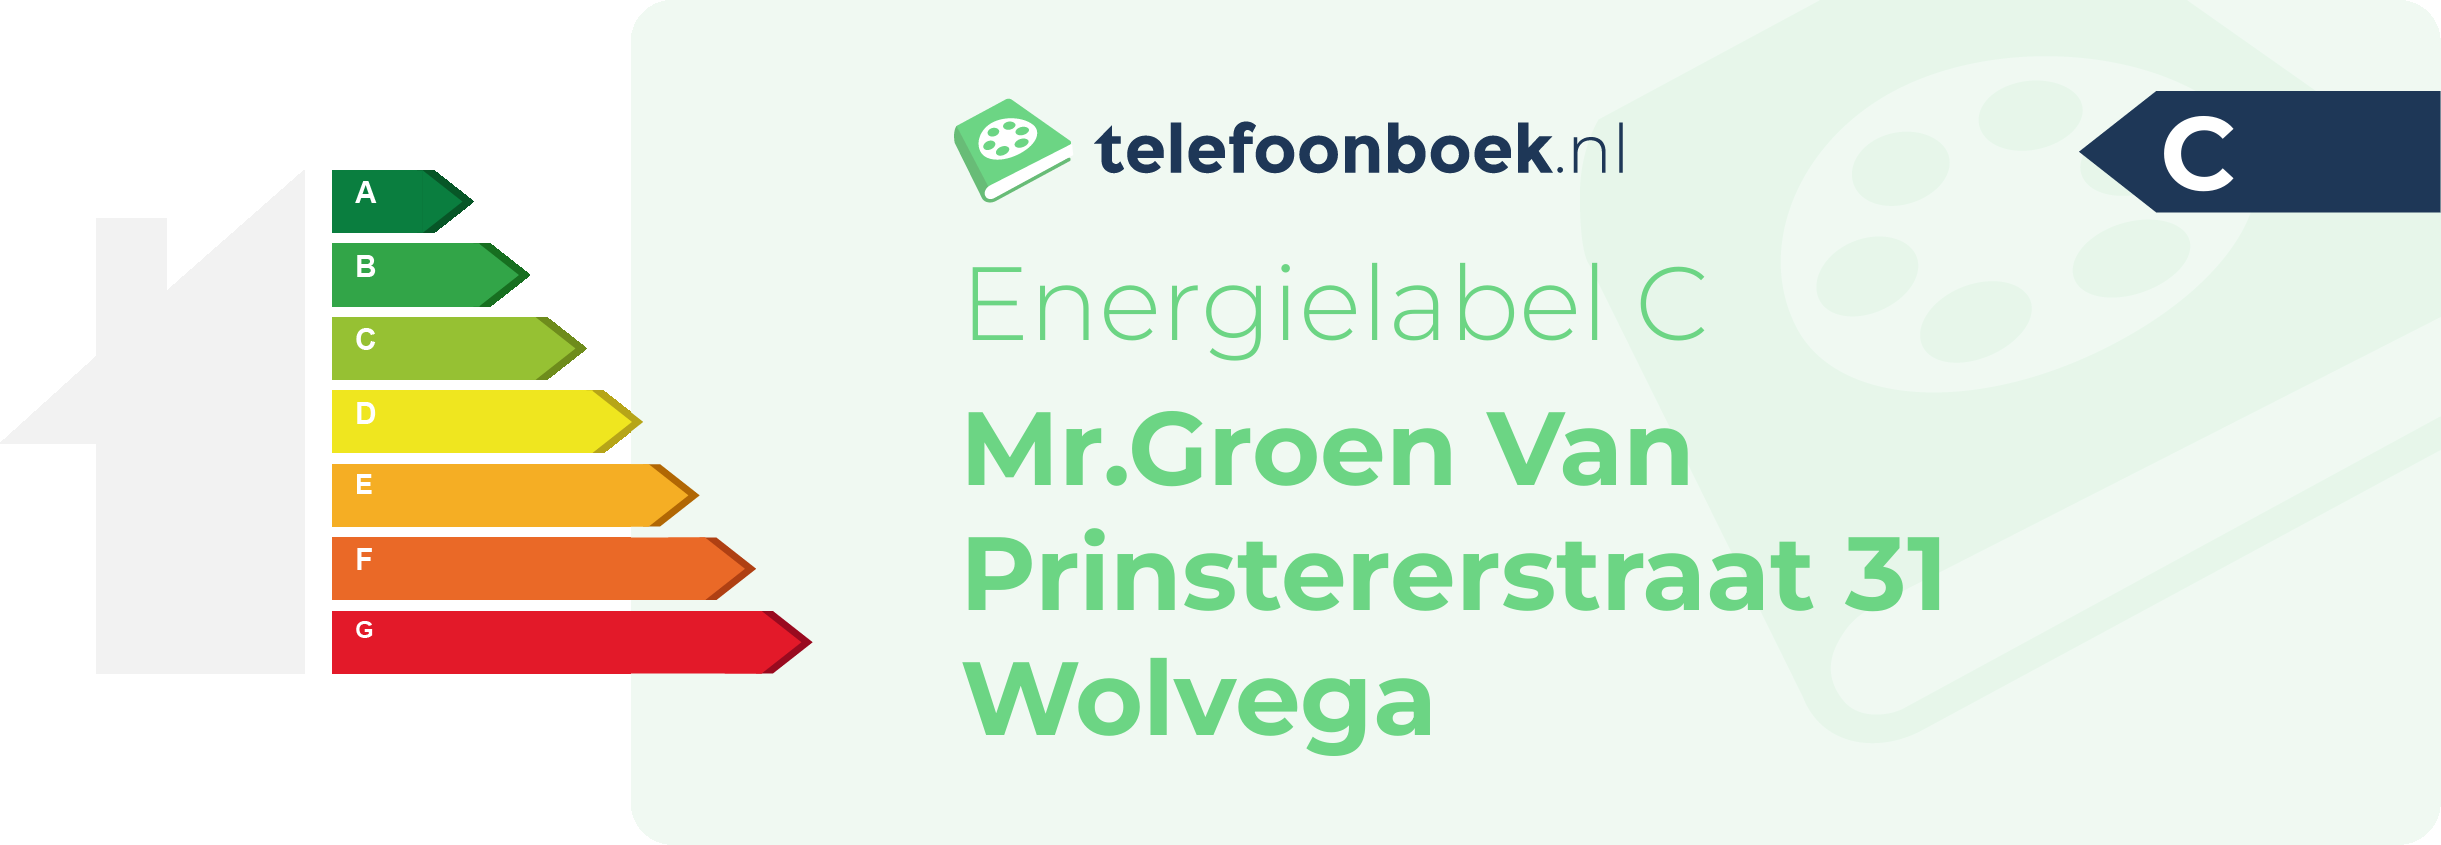 Energielabel Mr.Groen Van Prinstererstraat 31 Wolvega